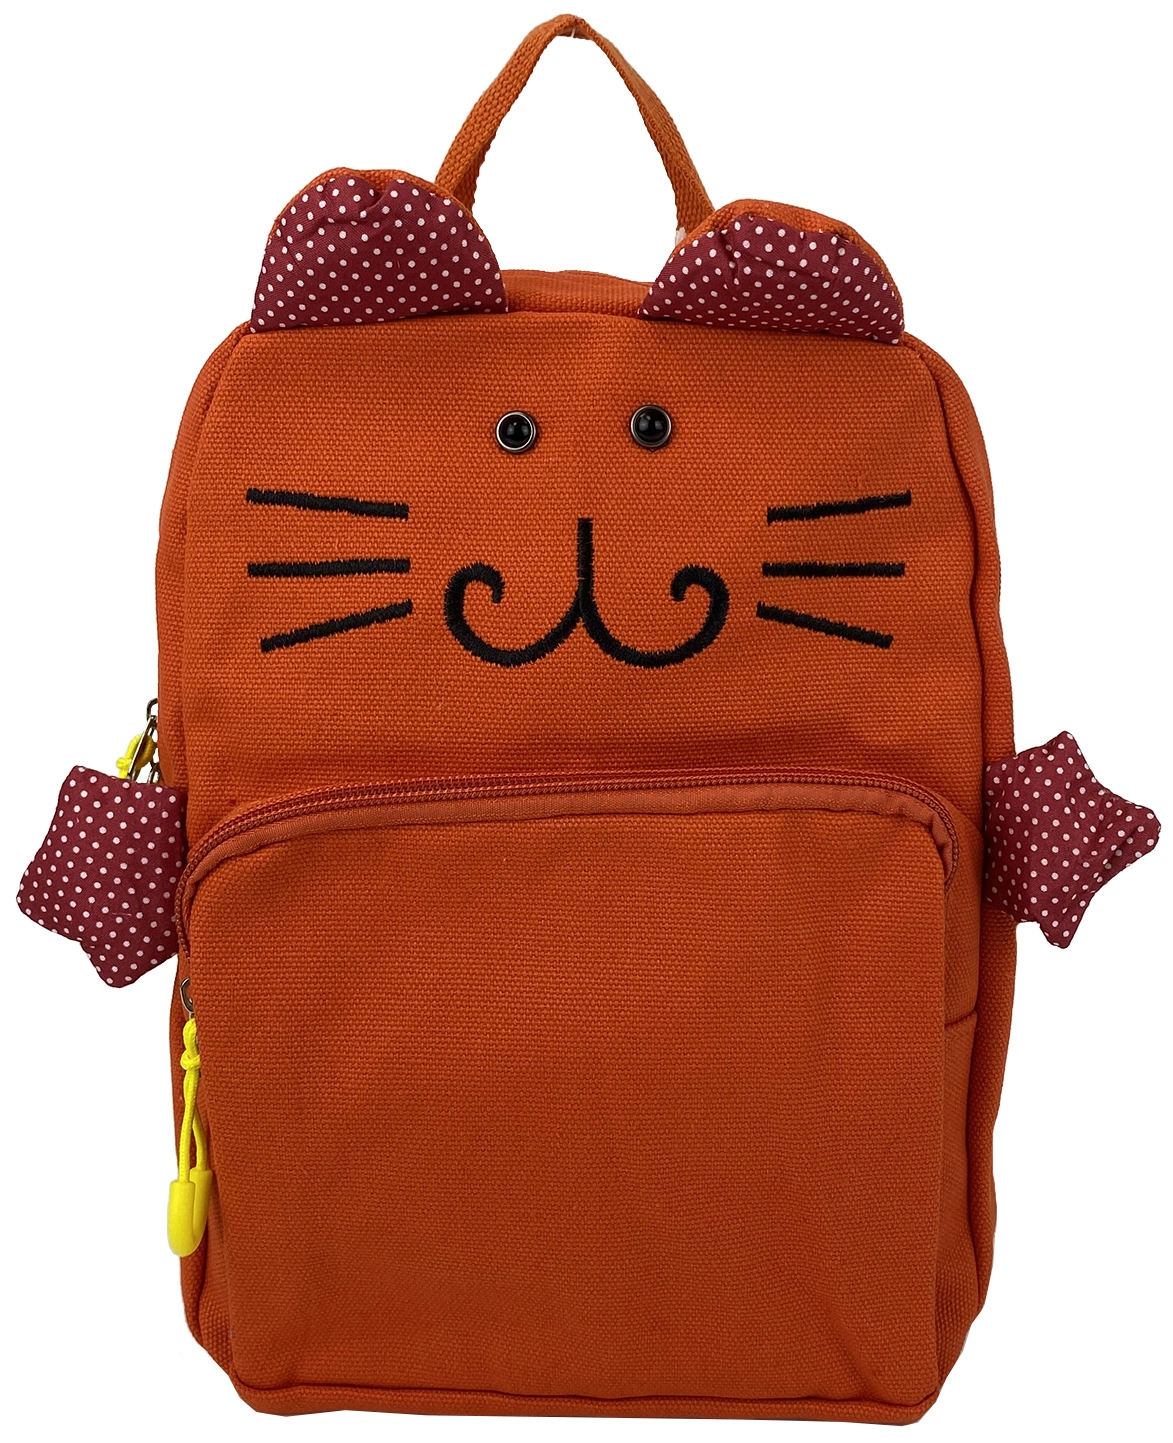 Рюкзак детский оранжевый  8603 фото 1